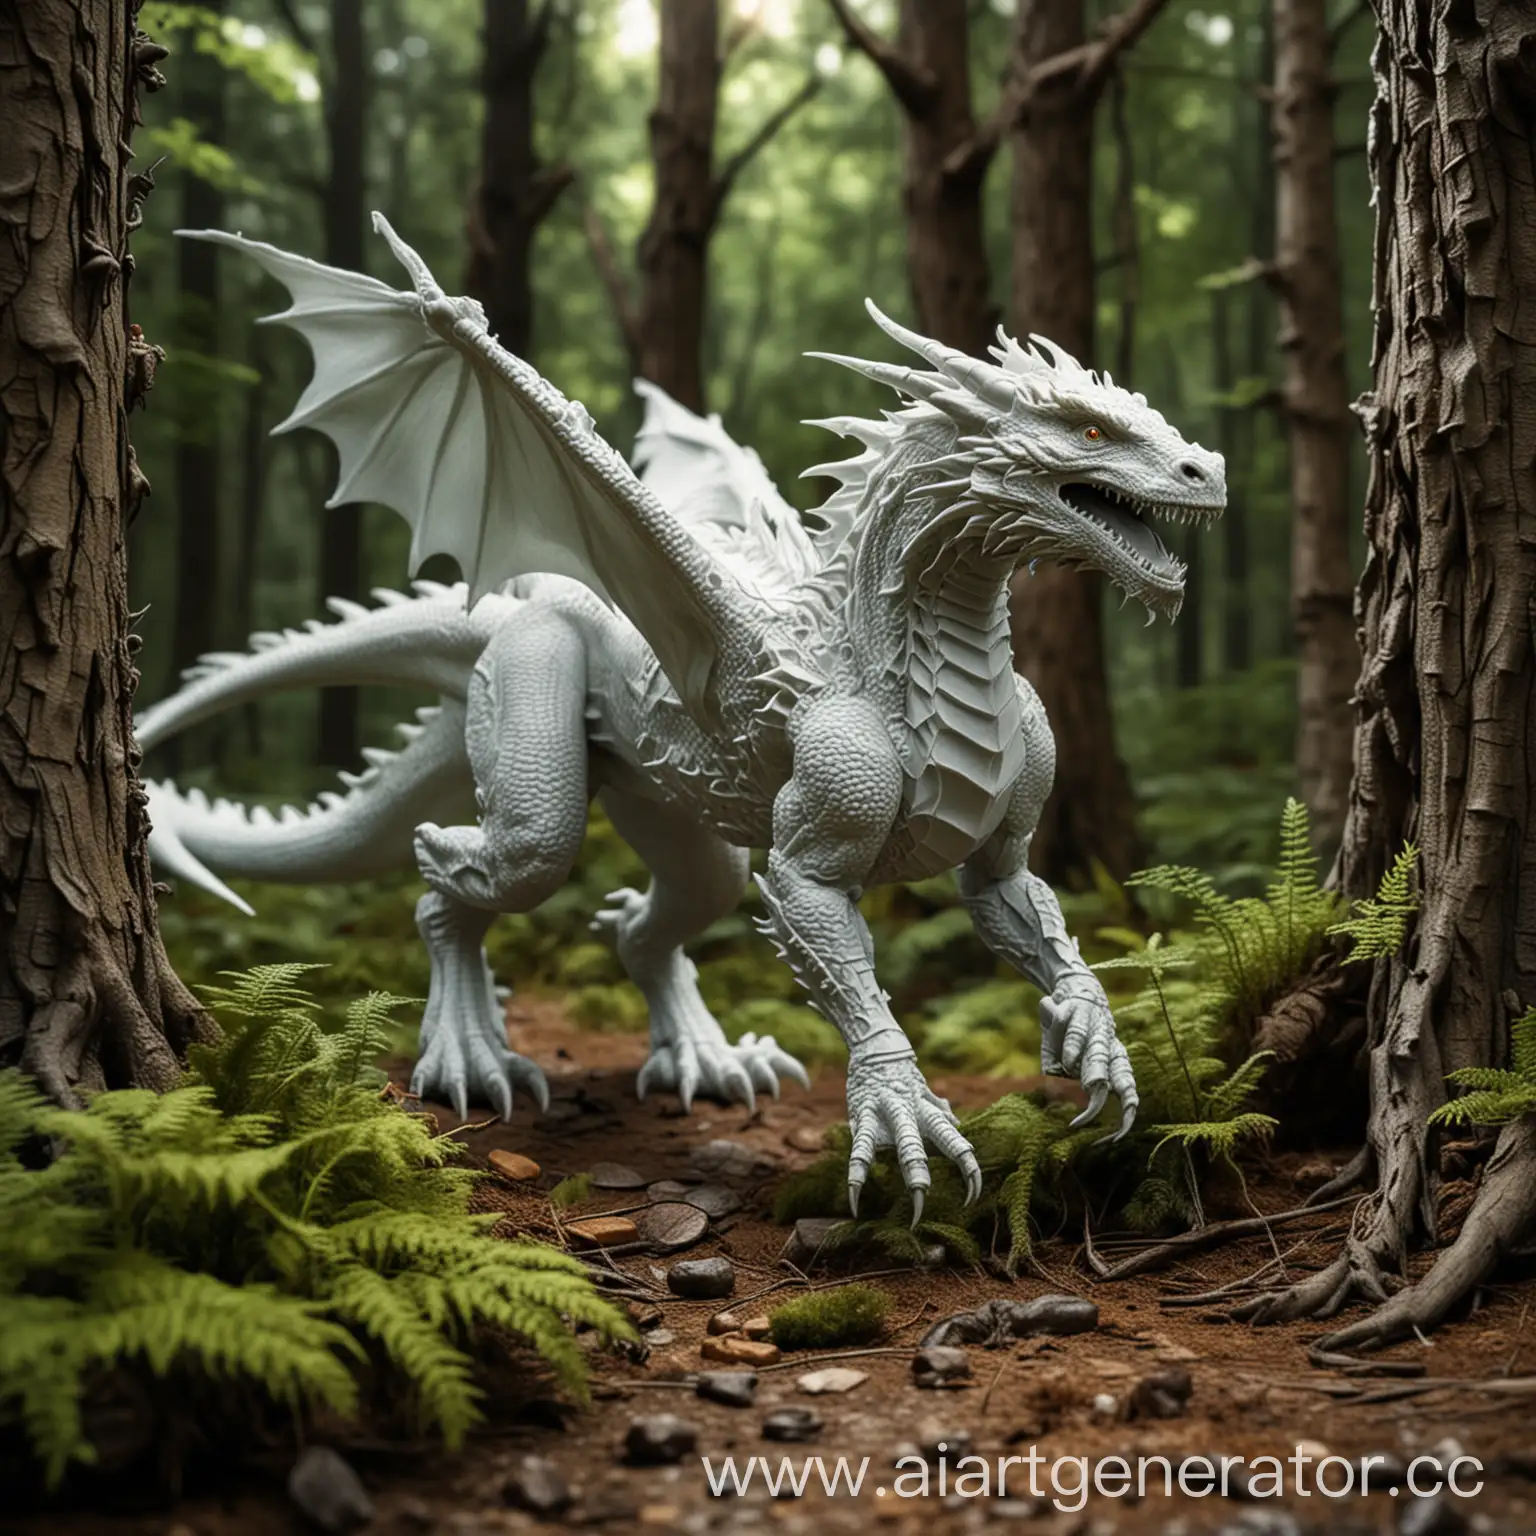 Дракон, напечатанный на 3д принтере, охотится на диких зверей в лесу, напечатанных на 3д принтере